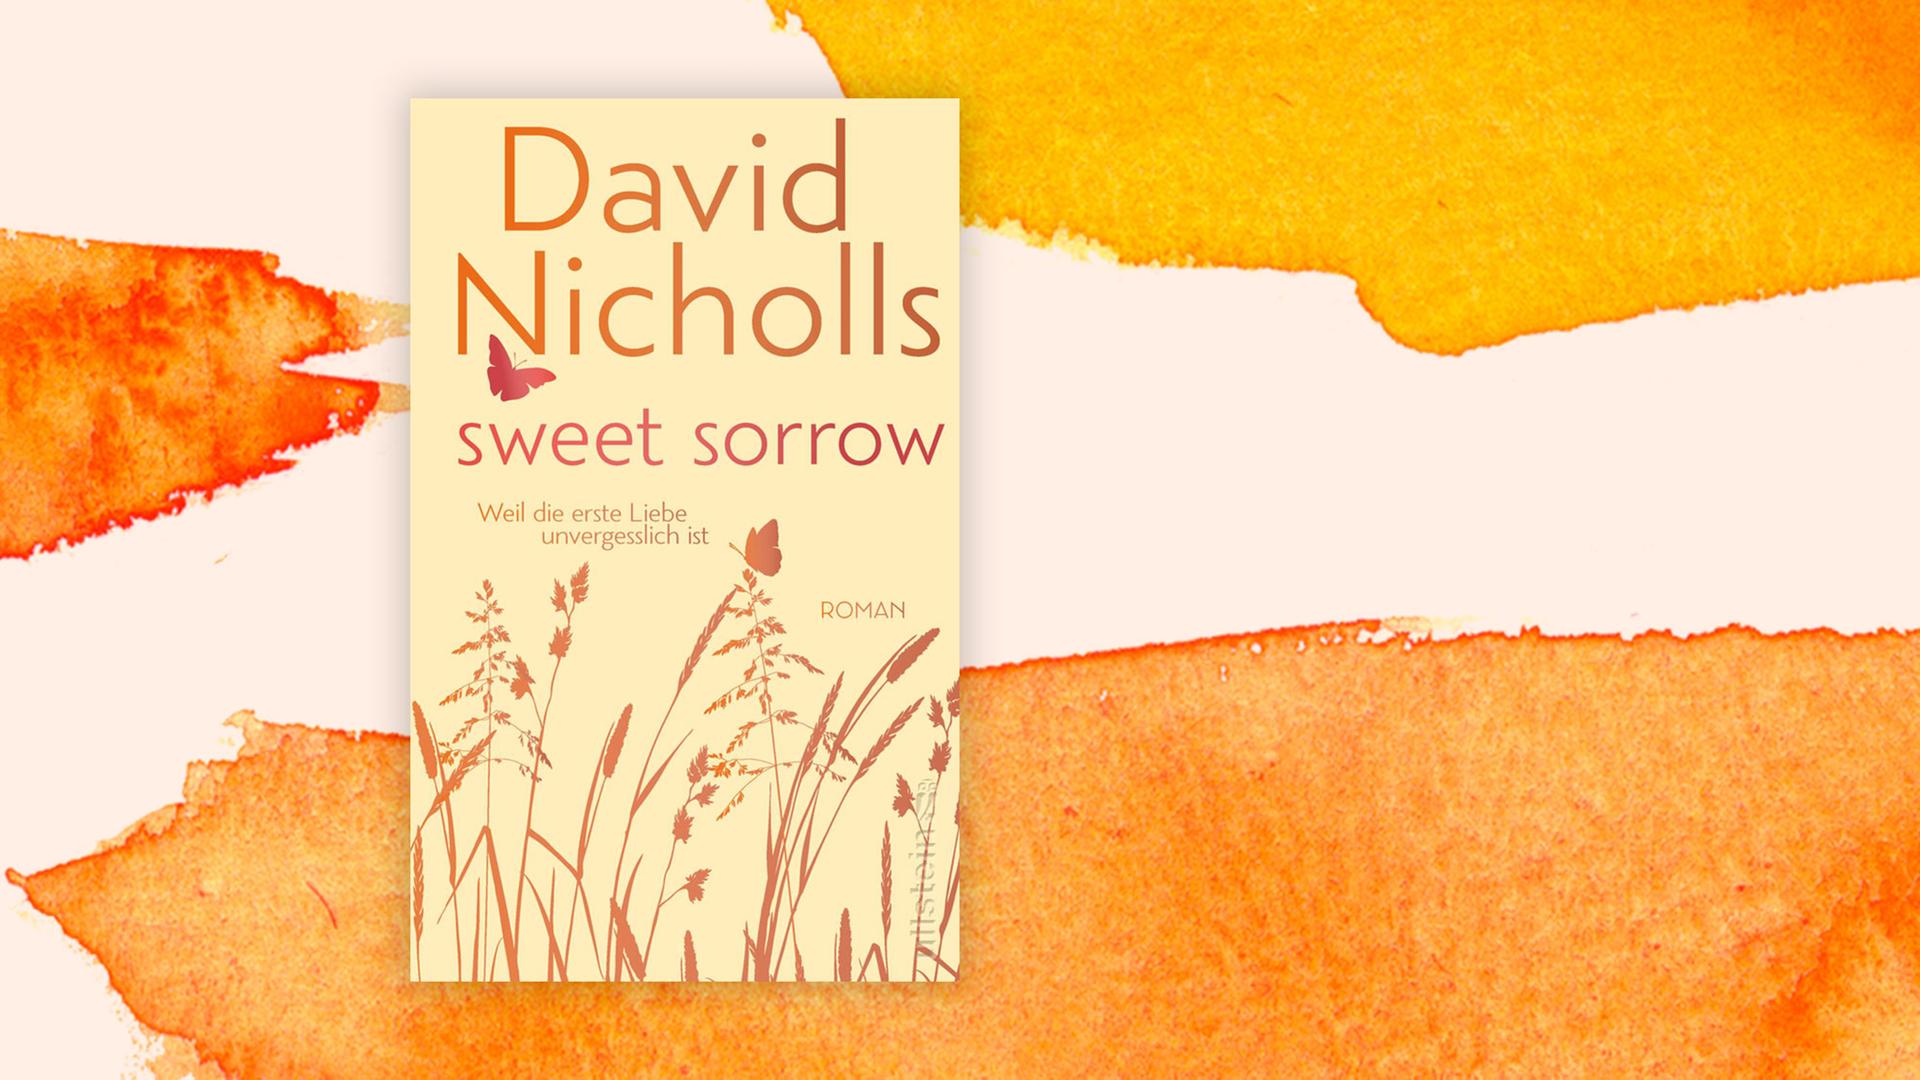 Coverabbildung des Romans "Sweet Sorrow" von David Nicholls.